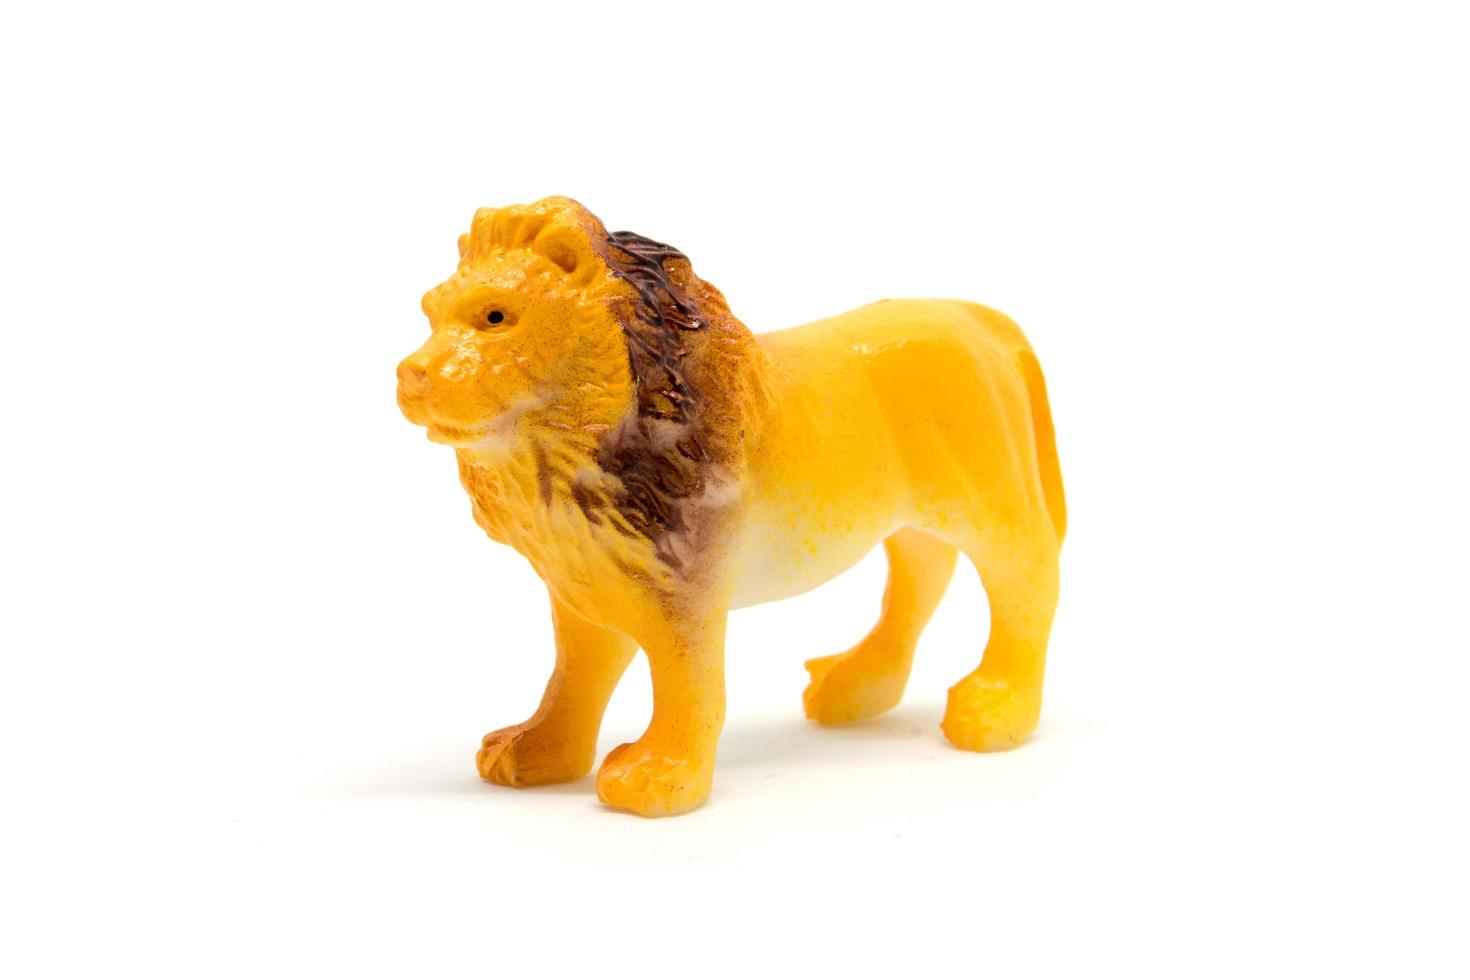 Löwenmodell isoliert auf weißem Hintergrund, Tierspielzeug aus Kunststoff foto